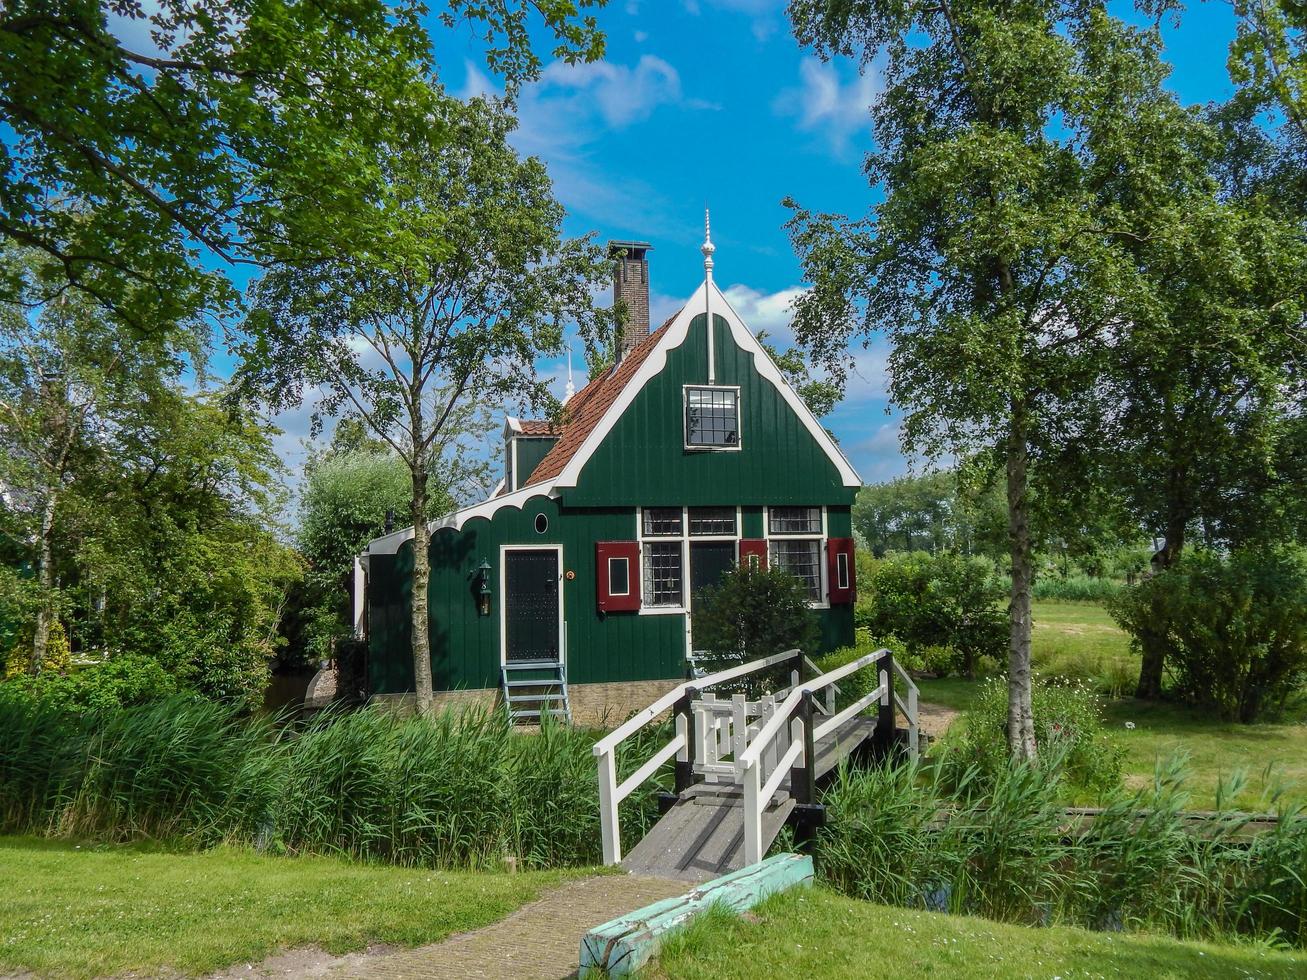 traditioneel huis in de zaanse schans, nederland op 19 juni 2016 foto